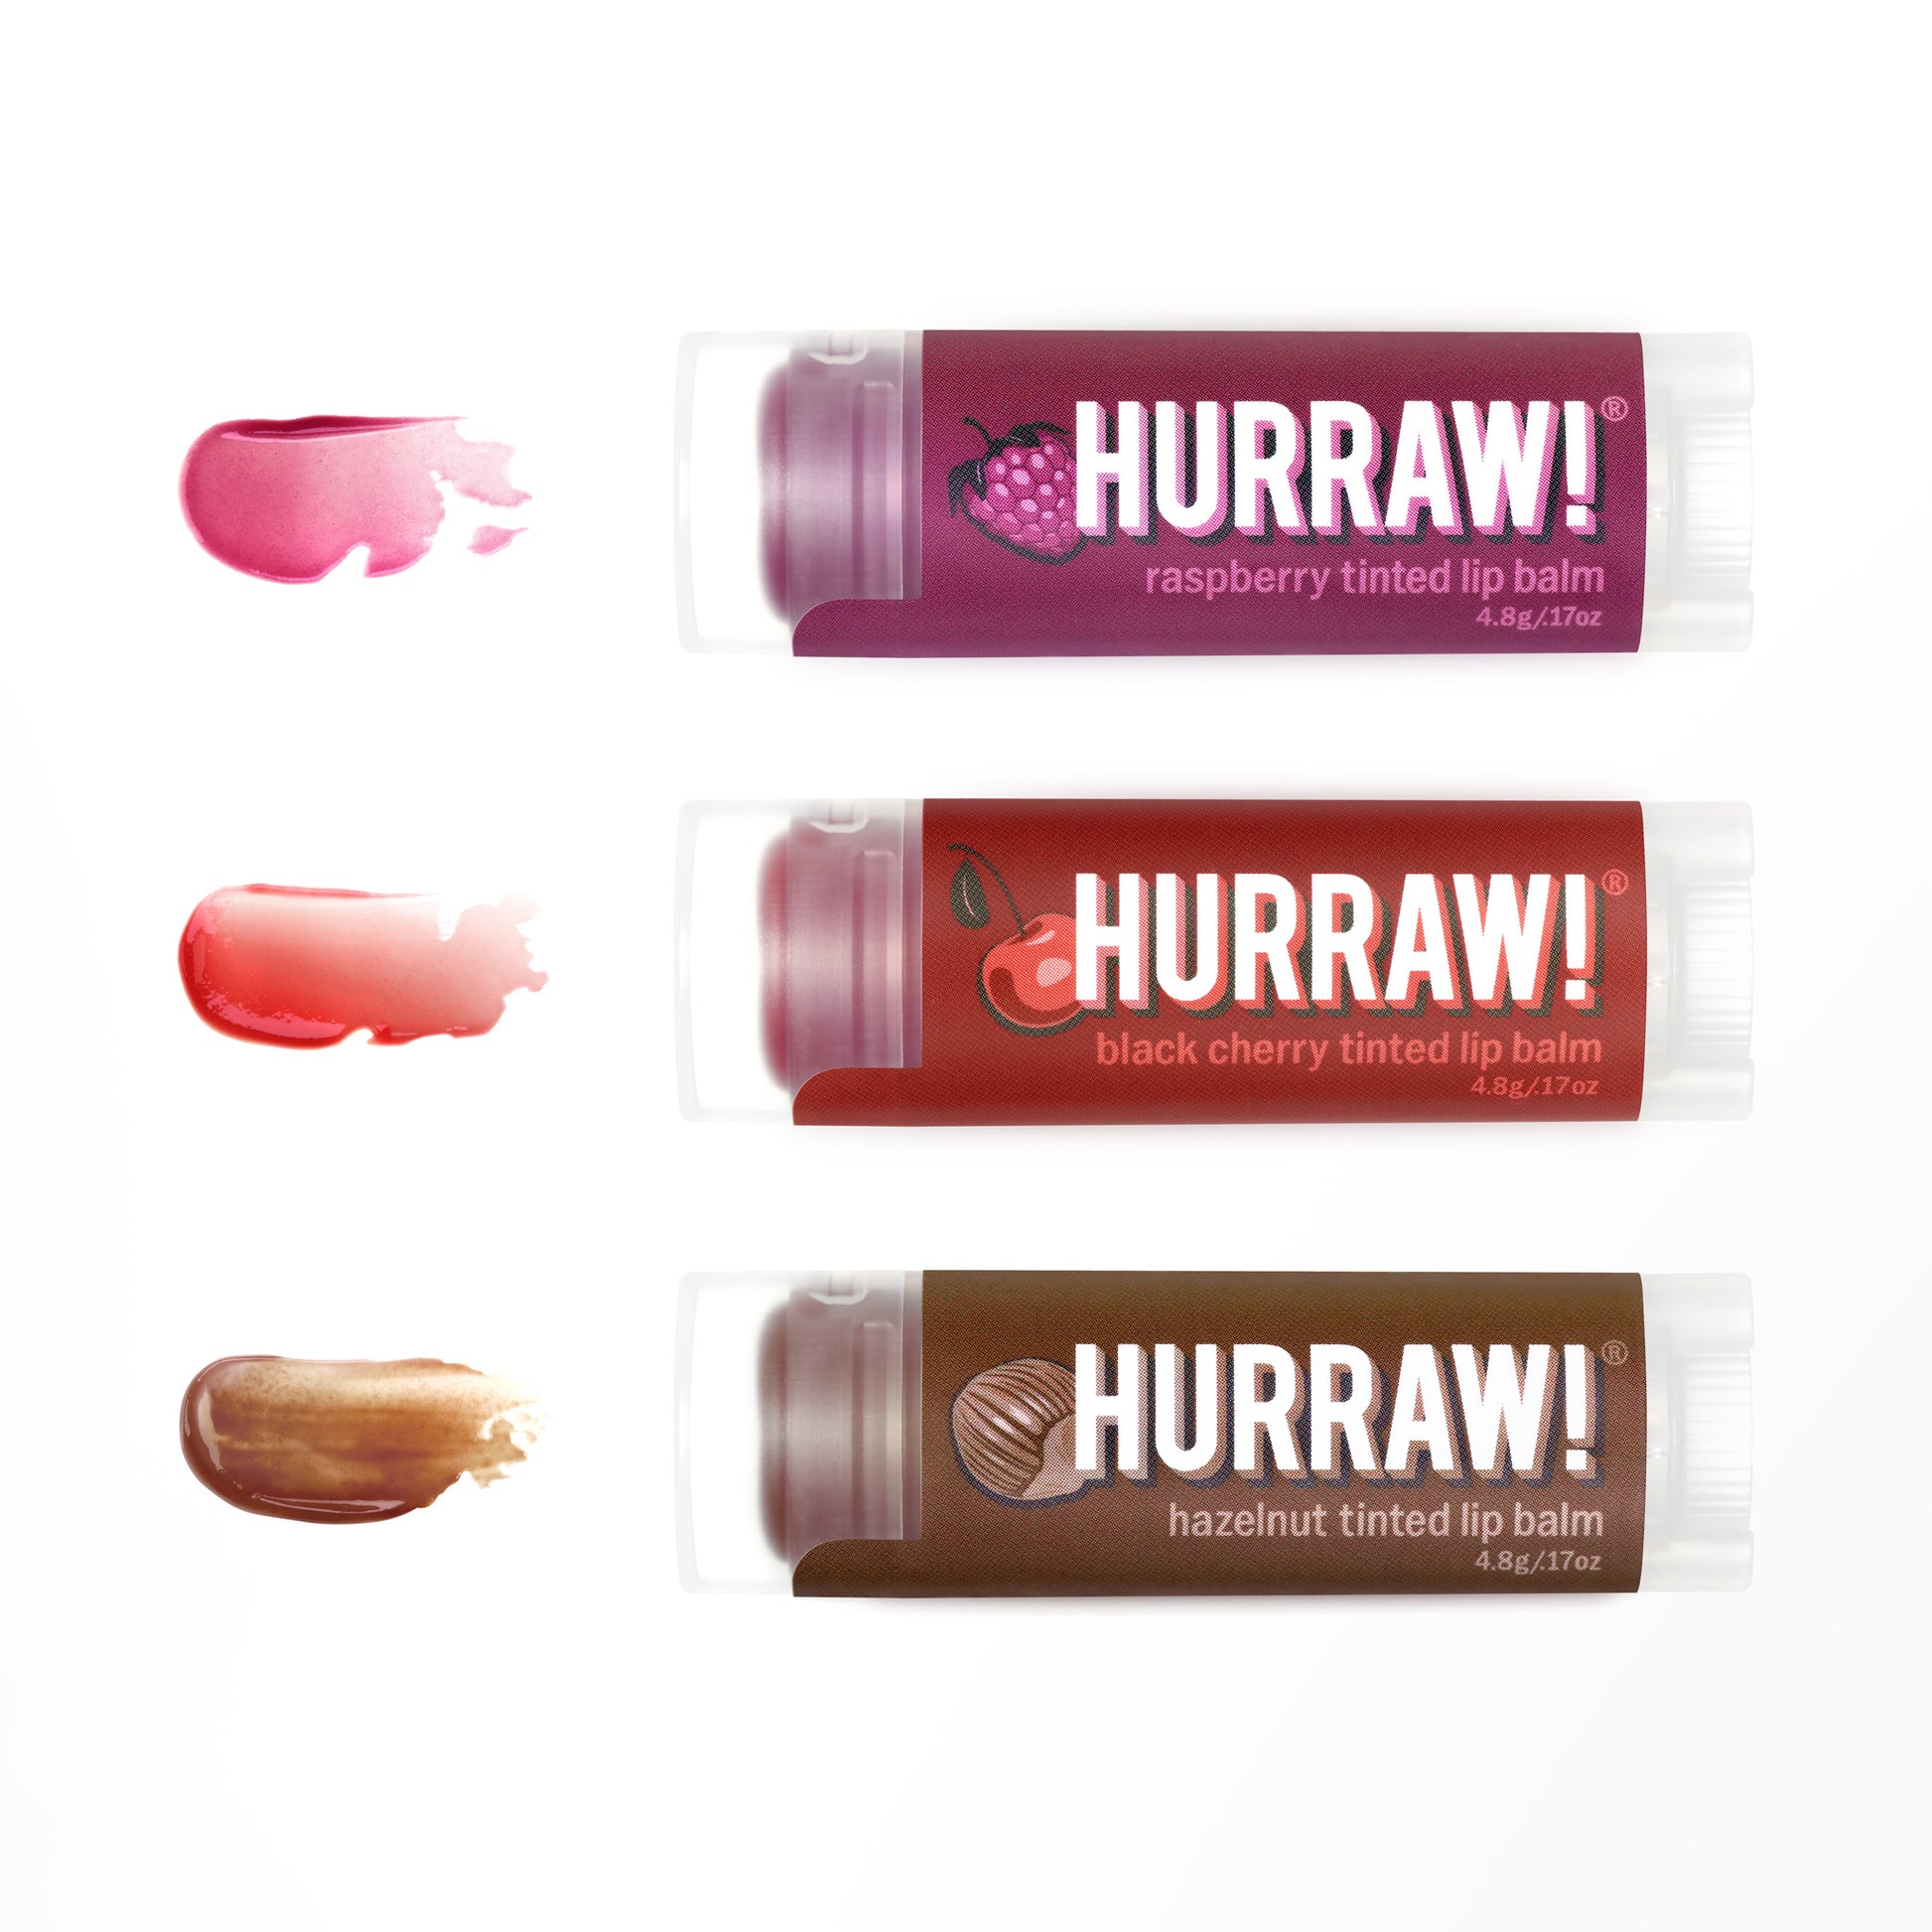 Hazelnut Tinted Balm : Vegan & Organic lip tint. – Hurraw! : Vegan lip balm, makeup, & natural deodorant.